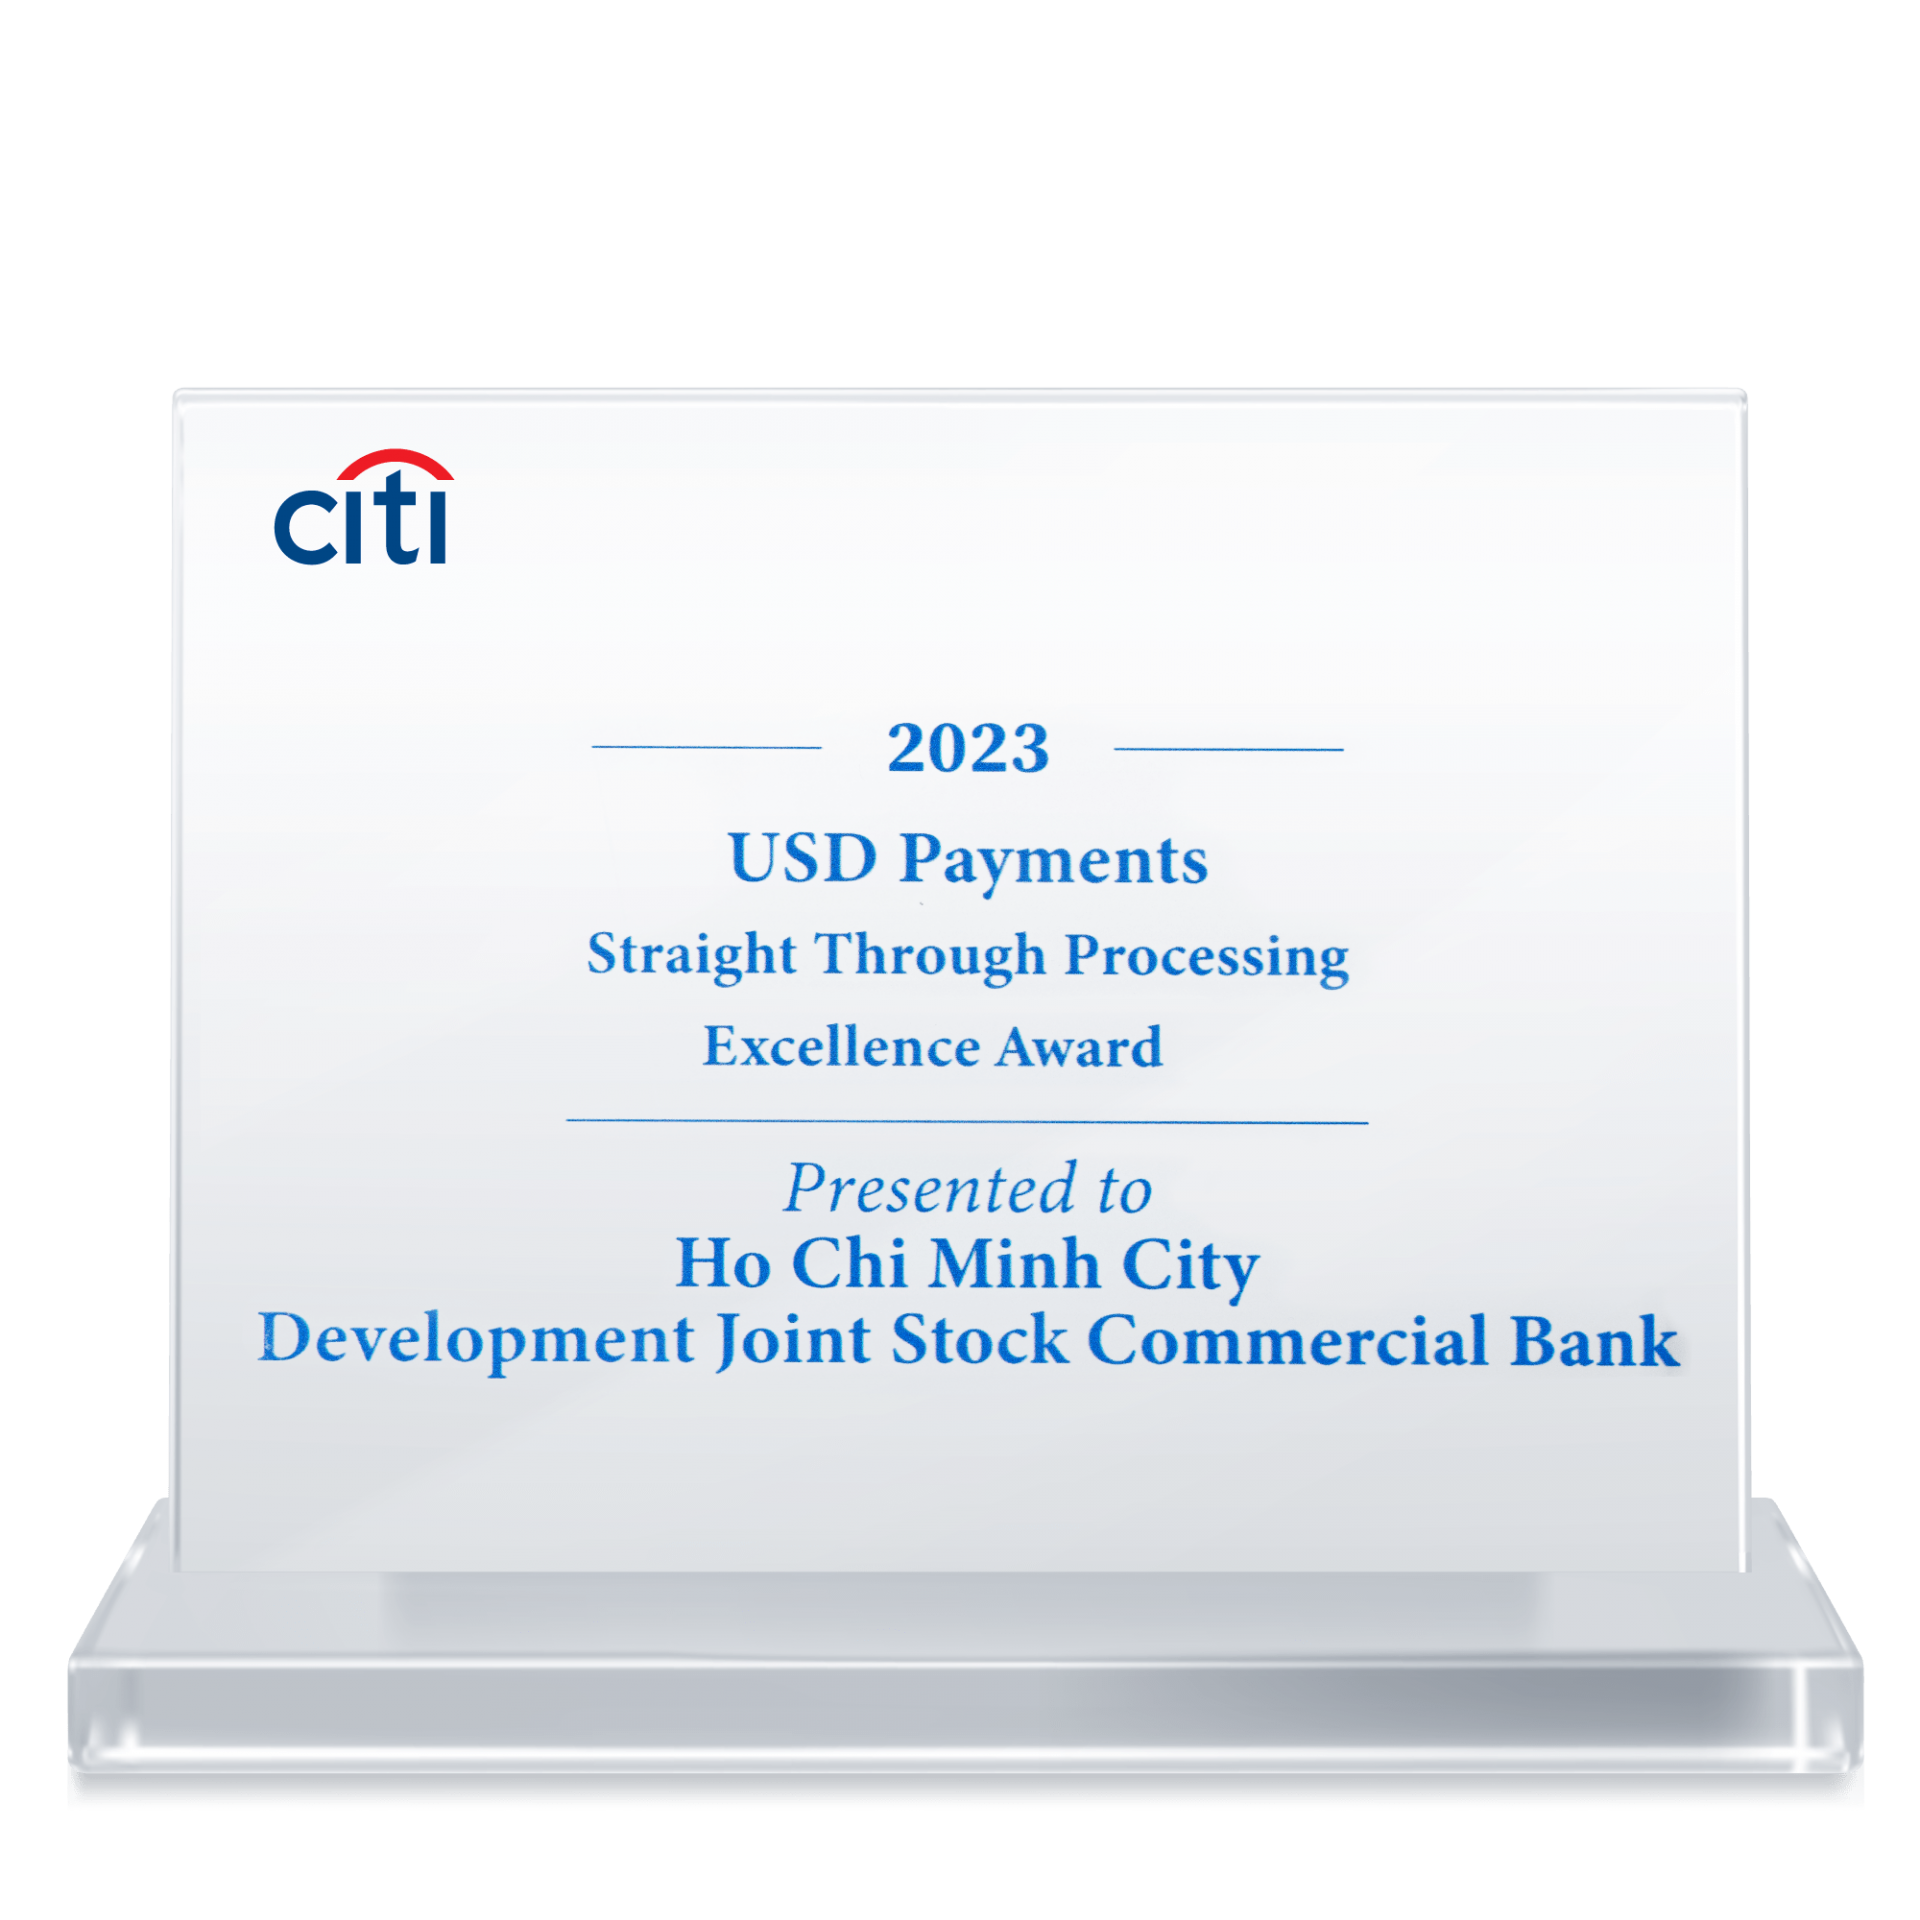 Liên tục nâng cao chất lượng thanh toán quốc tế, HDBank nhận “Giải thưởng chất lượng thanh toán quốc tế xuất sắc năm 2023” từ Citibank